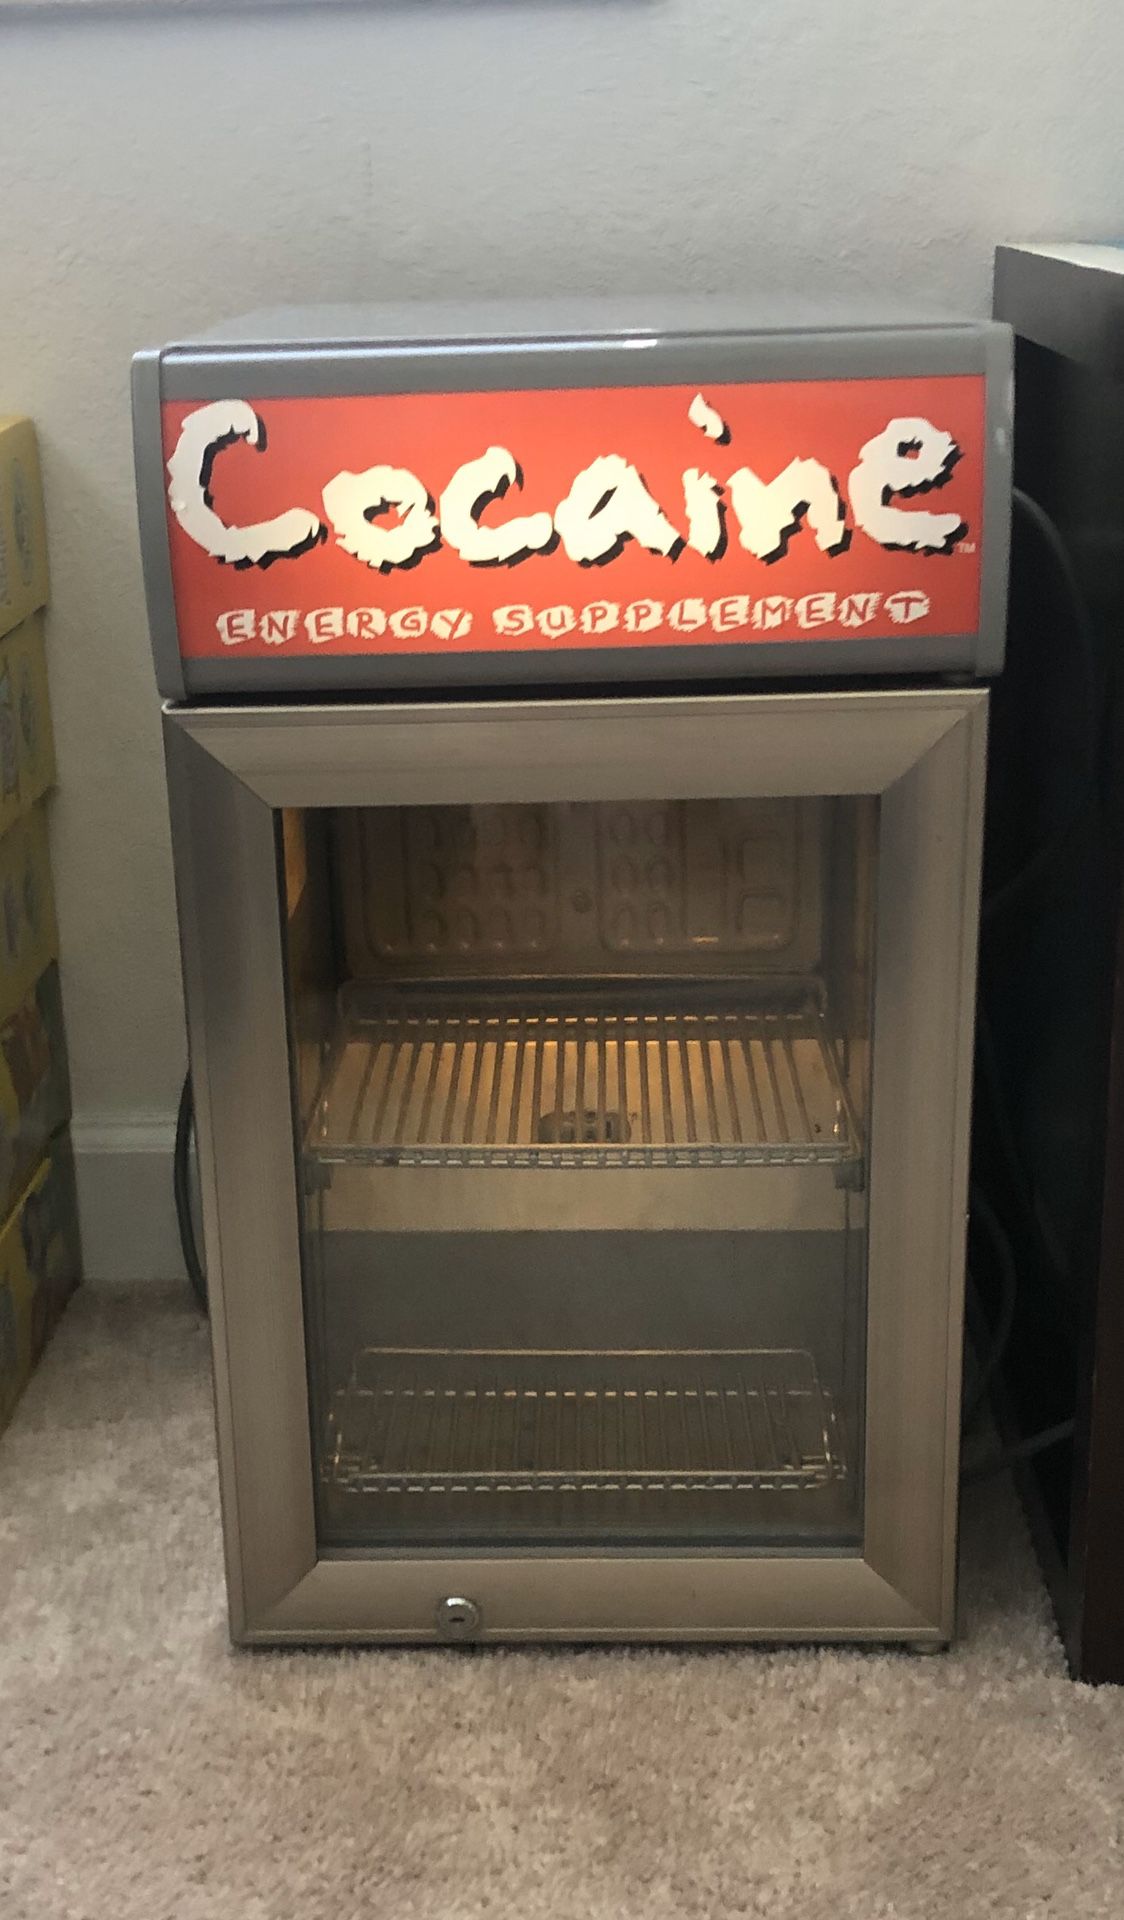 Mini fridge cocaine energy supplement